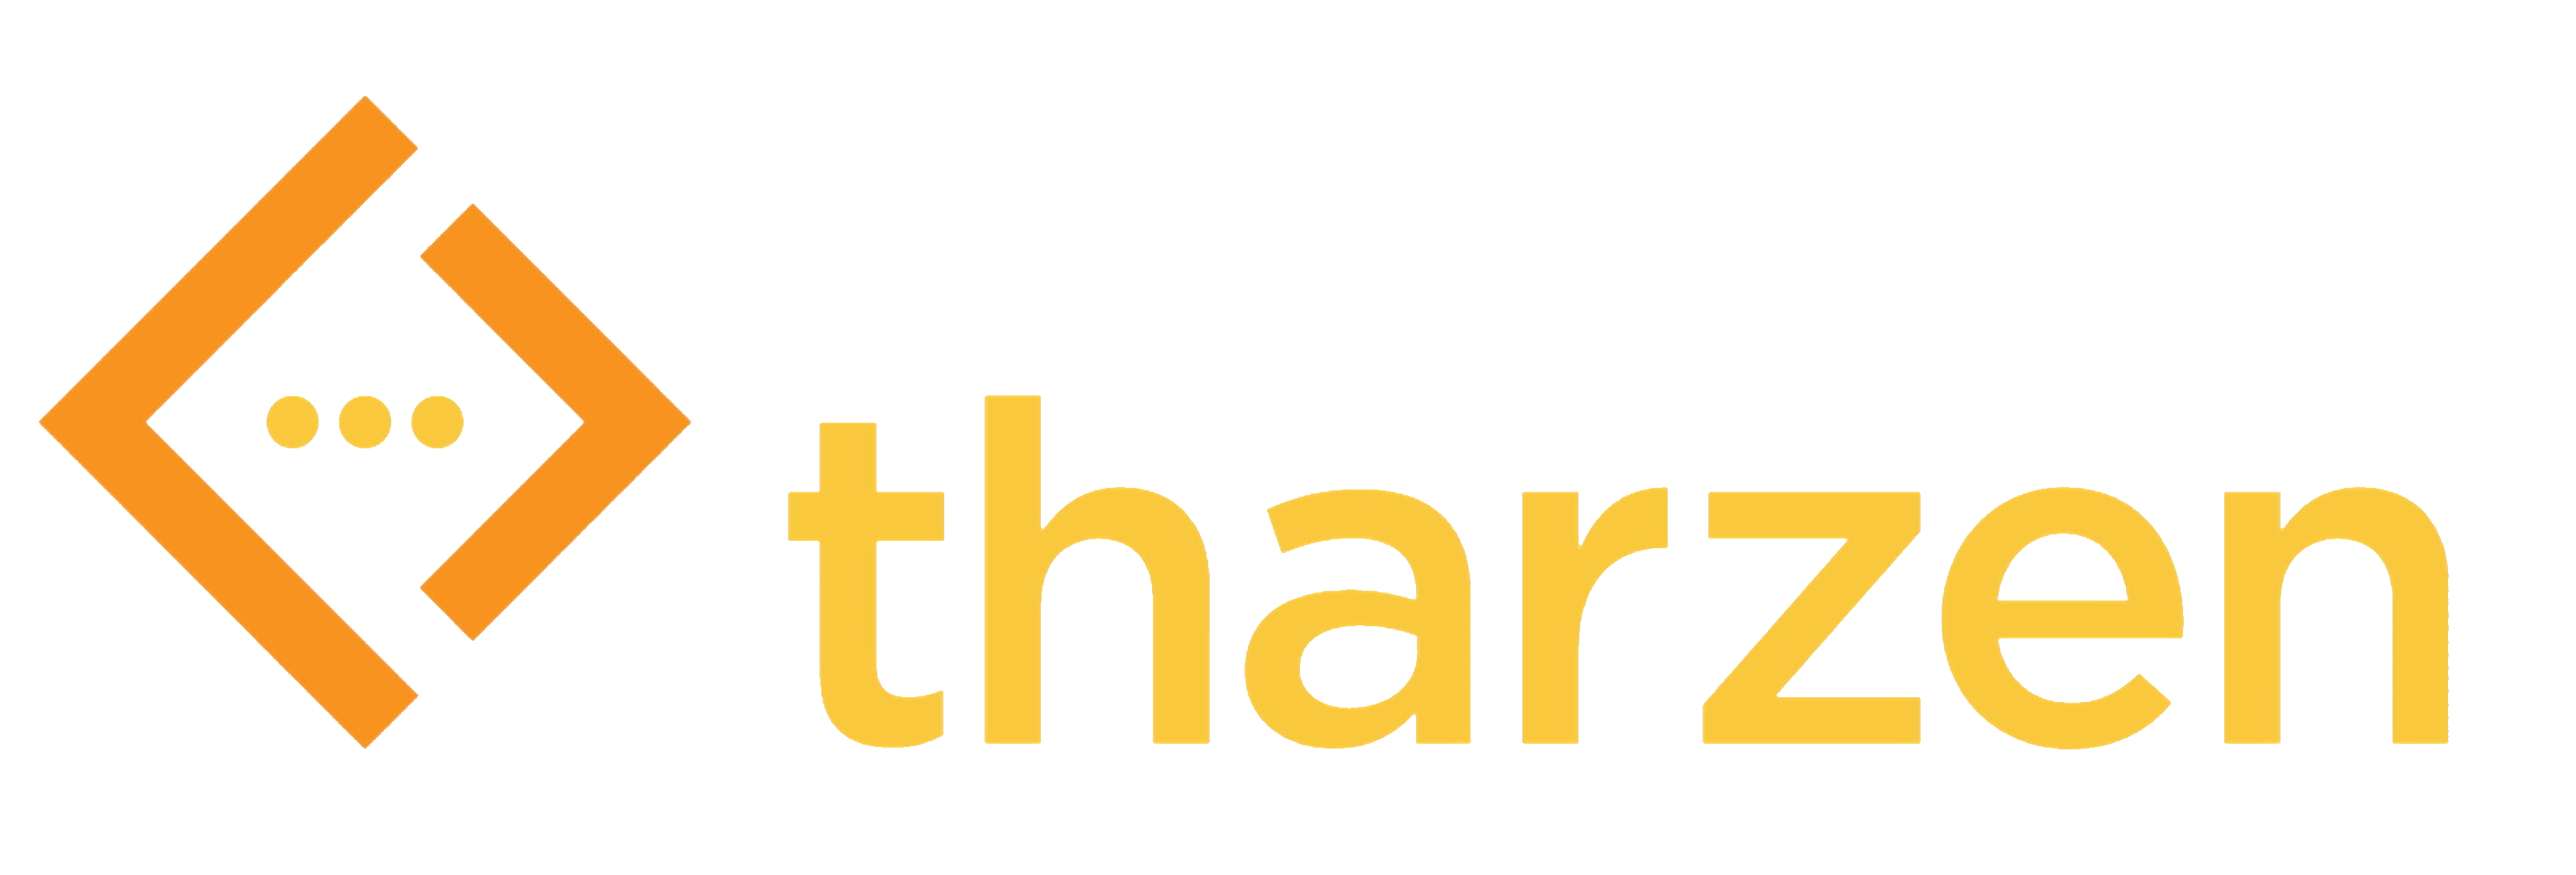 Tharzen_logo.png